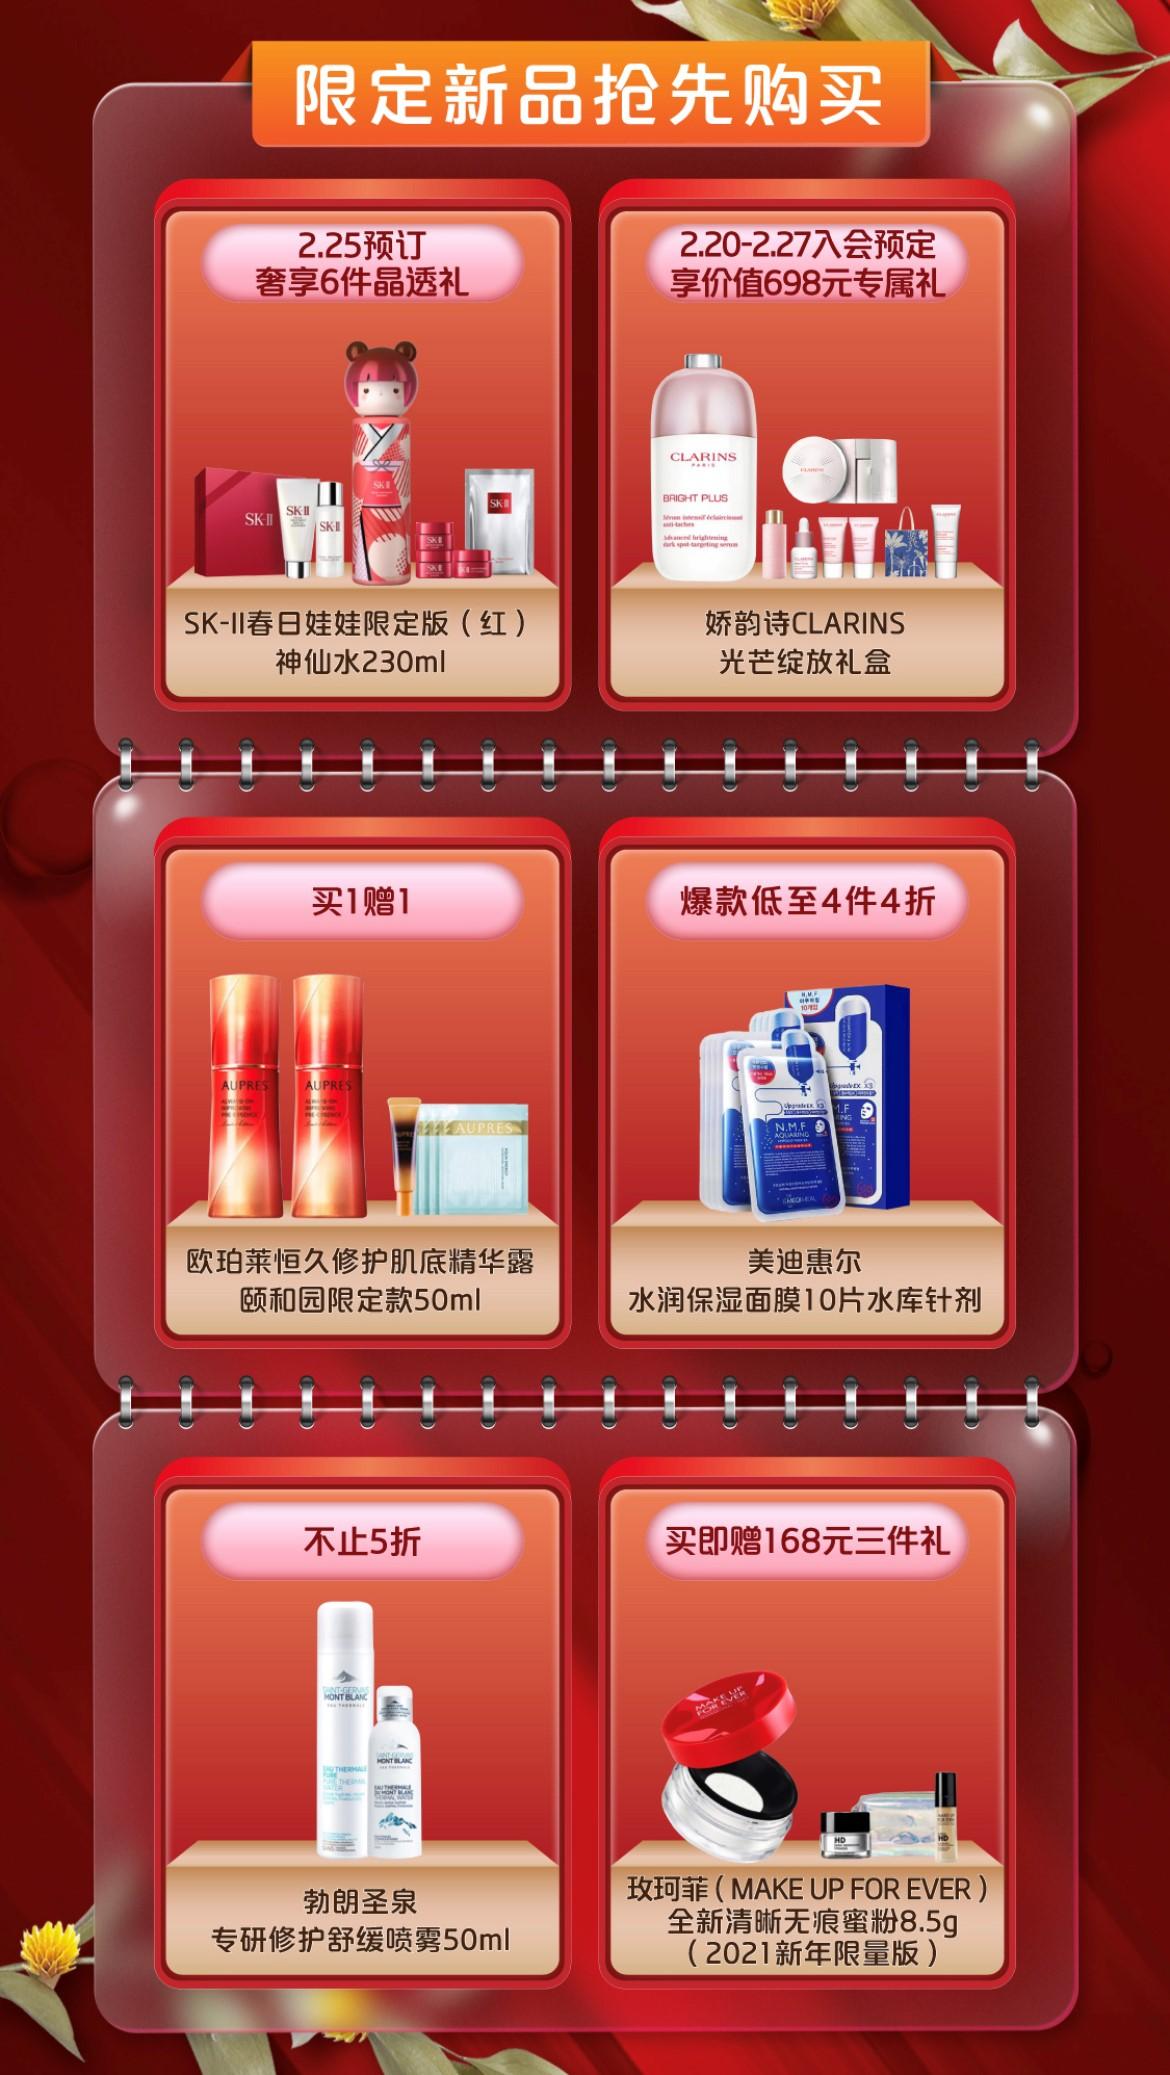 兰蔻大粉水、SK-II神仙水、兰芝隔离霜 2.28京东美妆超品日爆品清单出炉